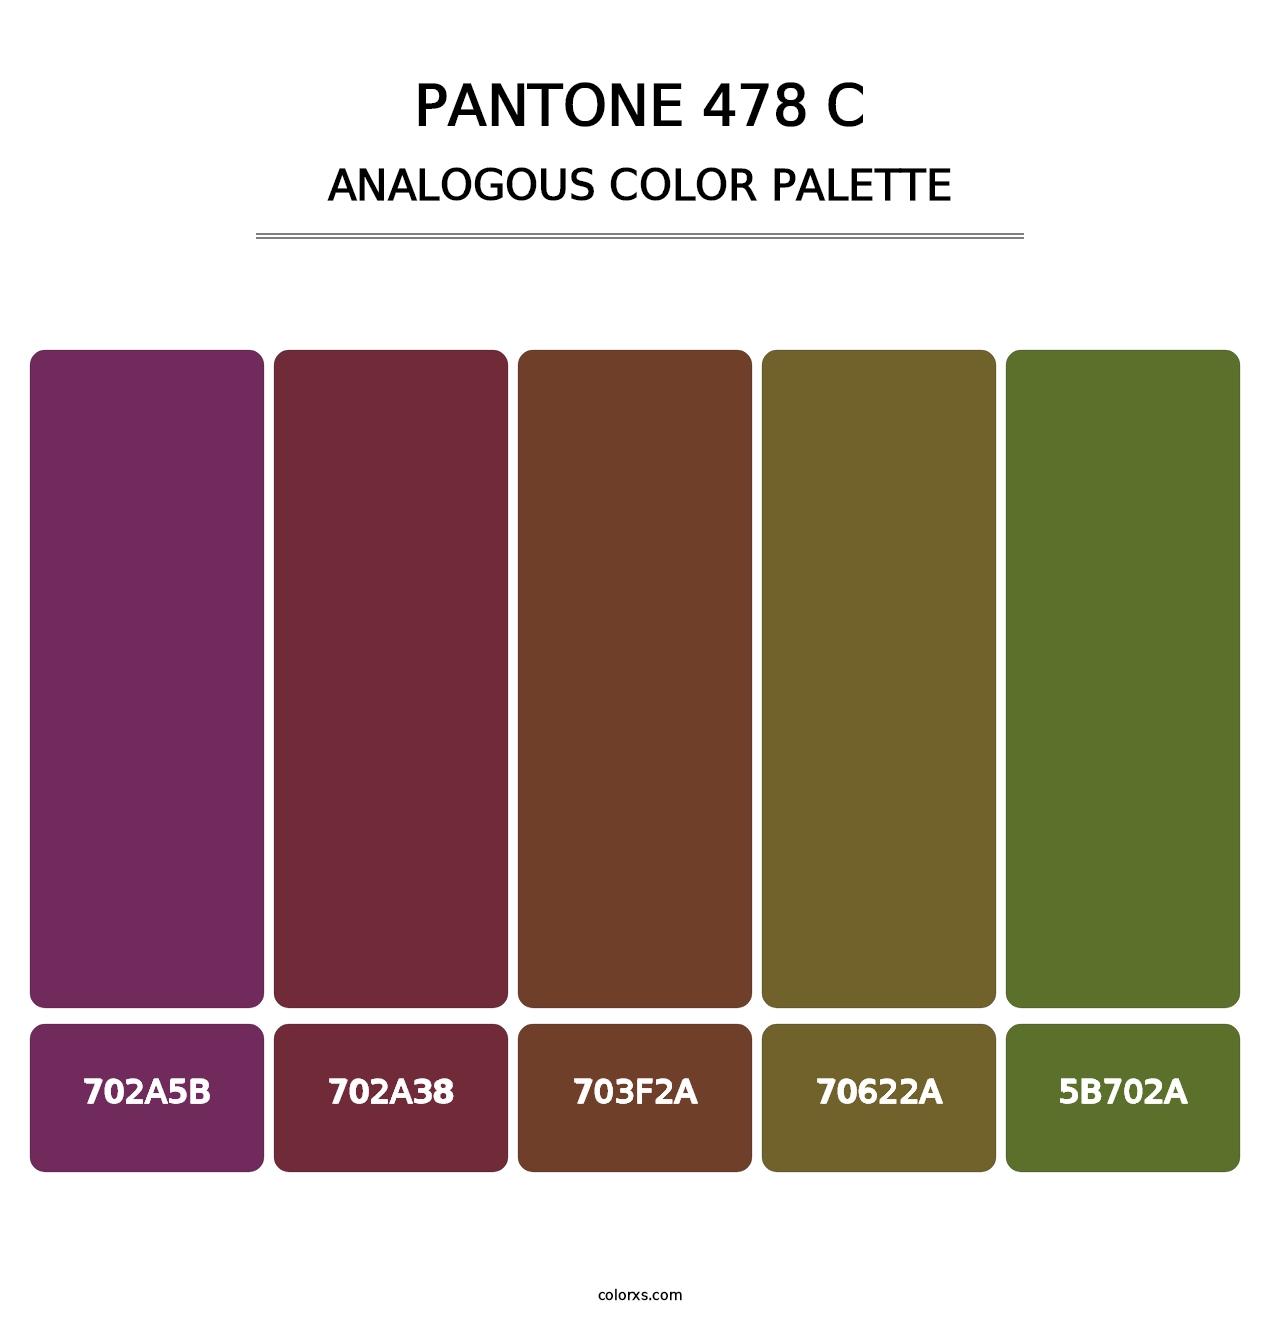 PANTONE 478 C - Analogous Color Palette